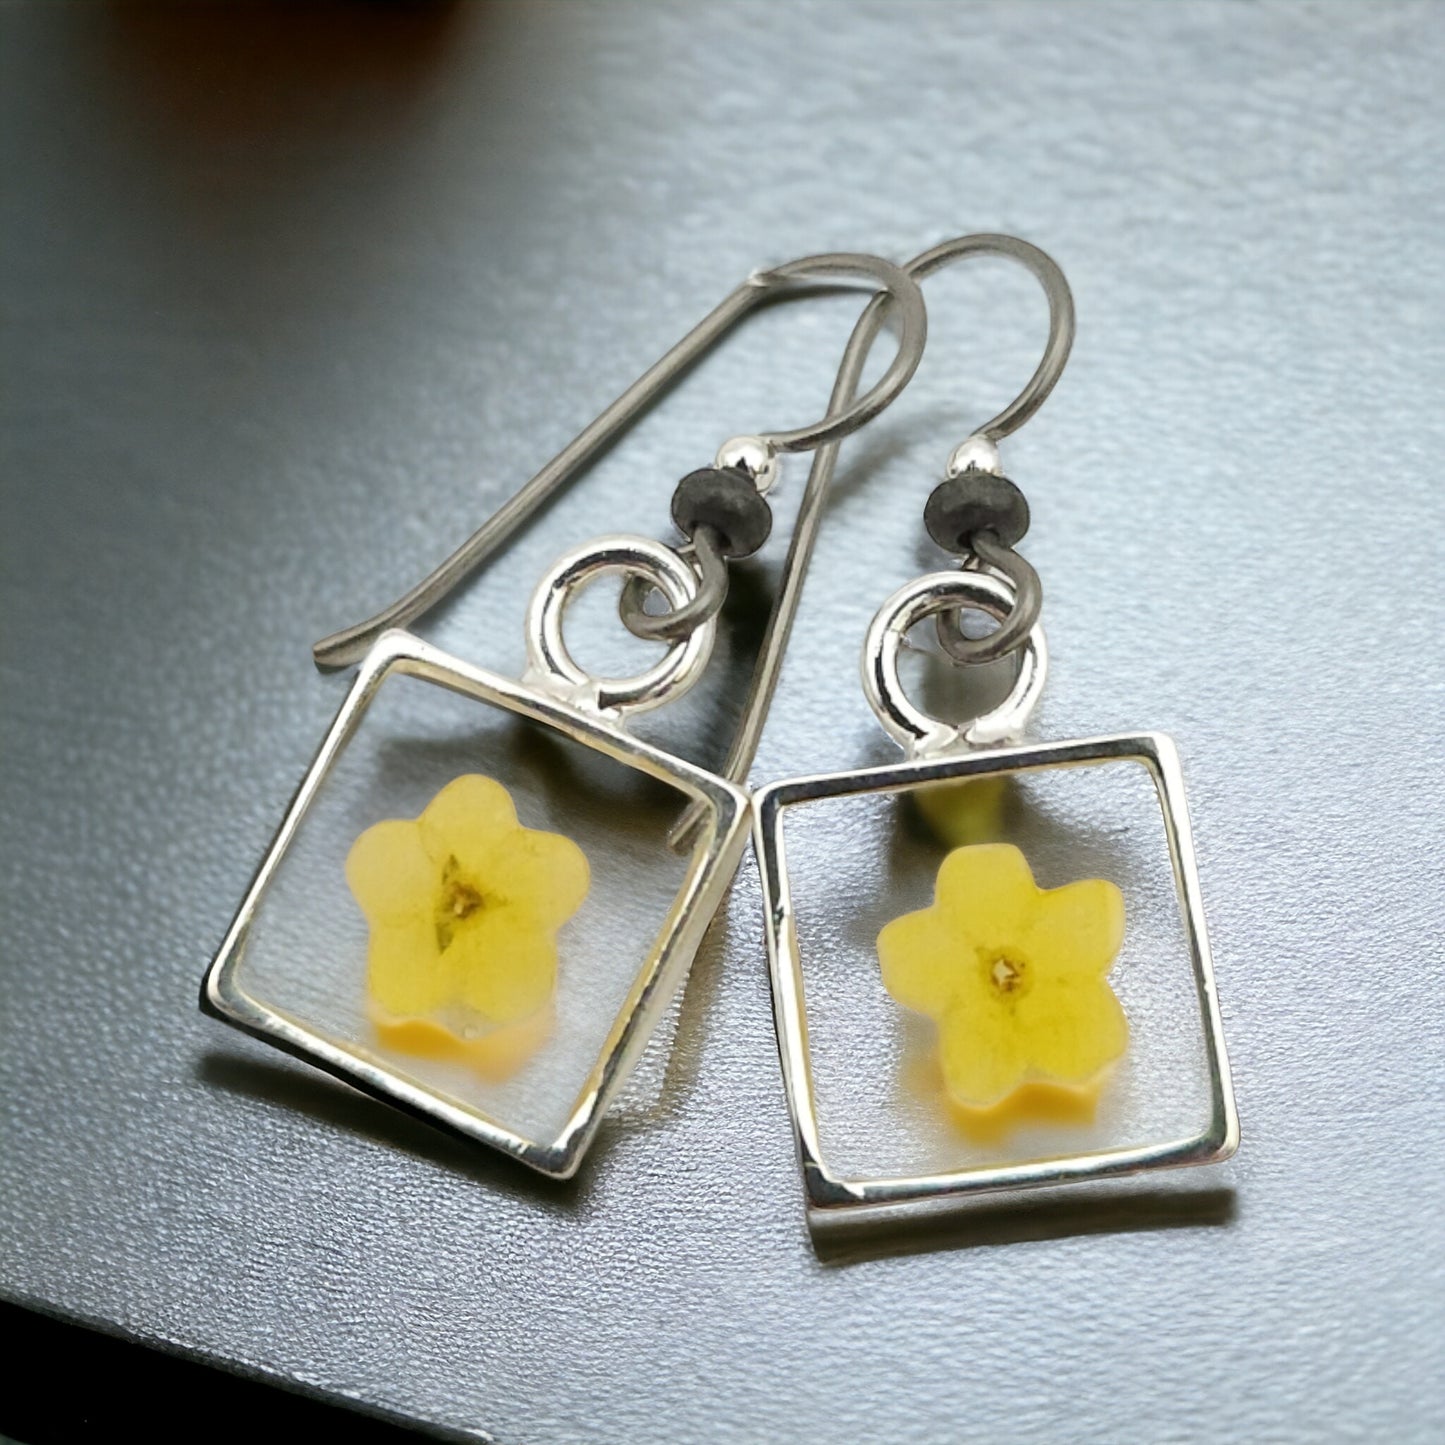 Forget-me-nots Yellow Flower Earrings In Small Silver Bezel